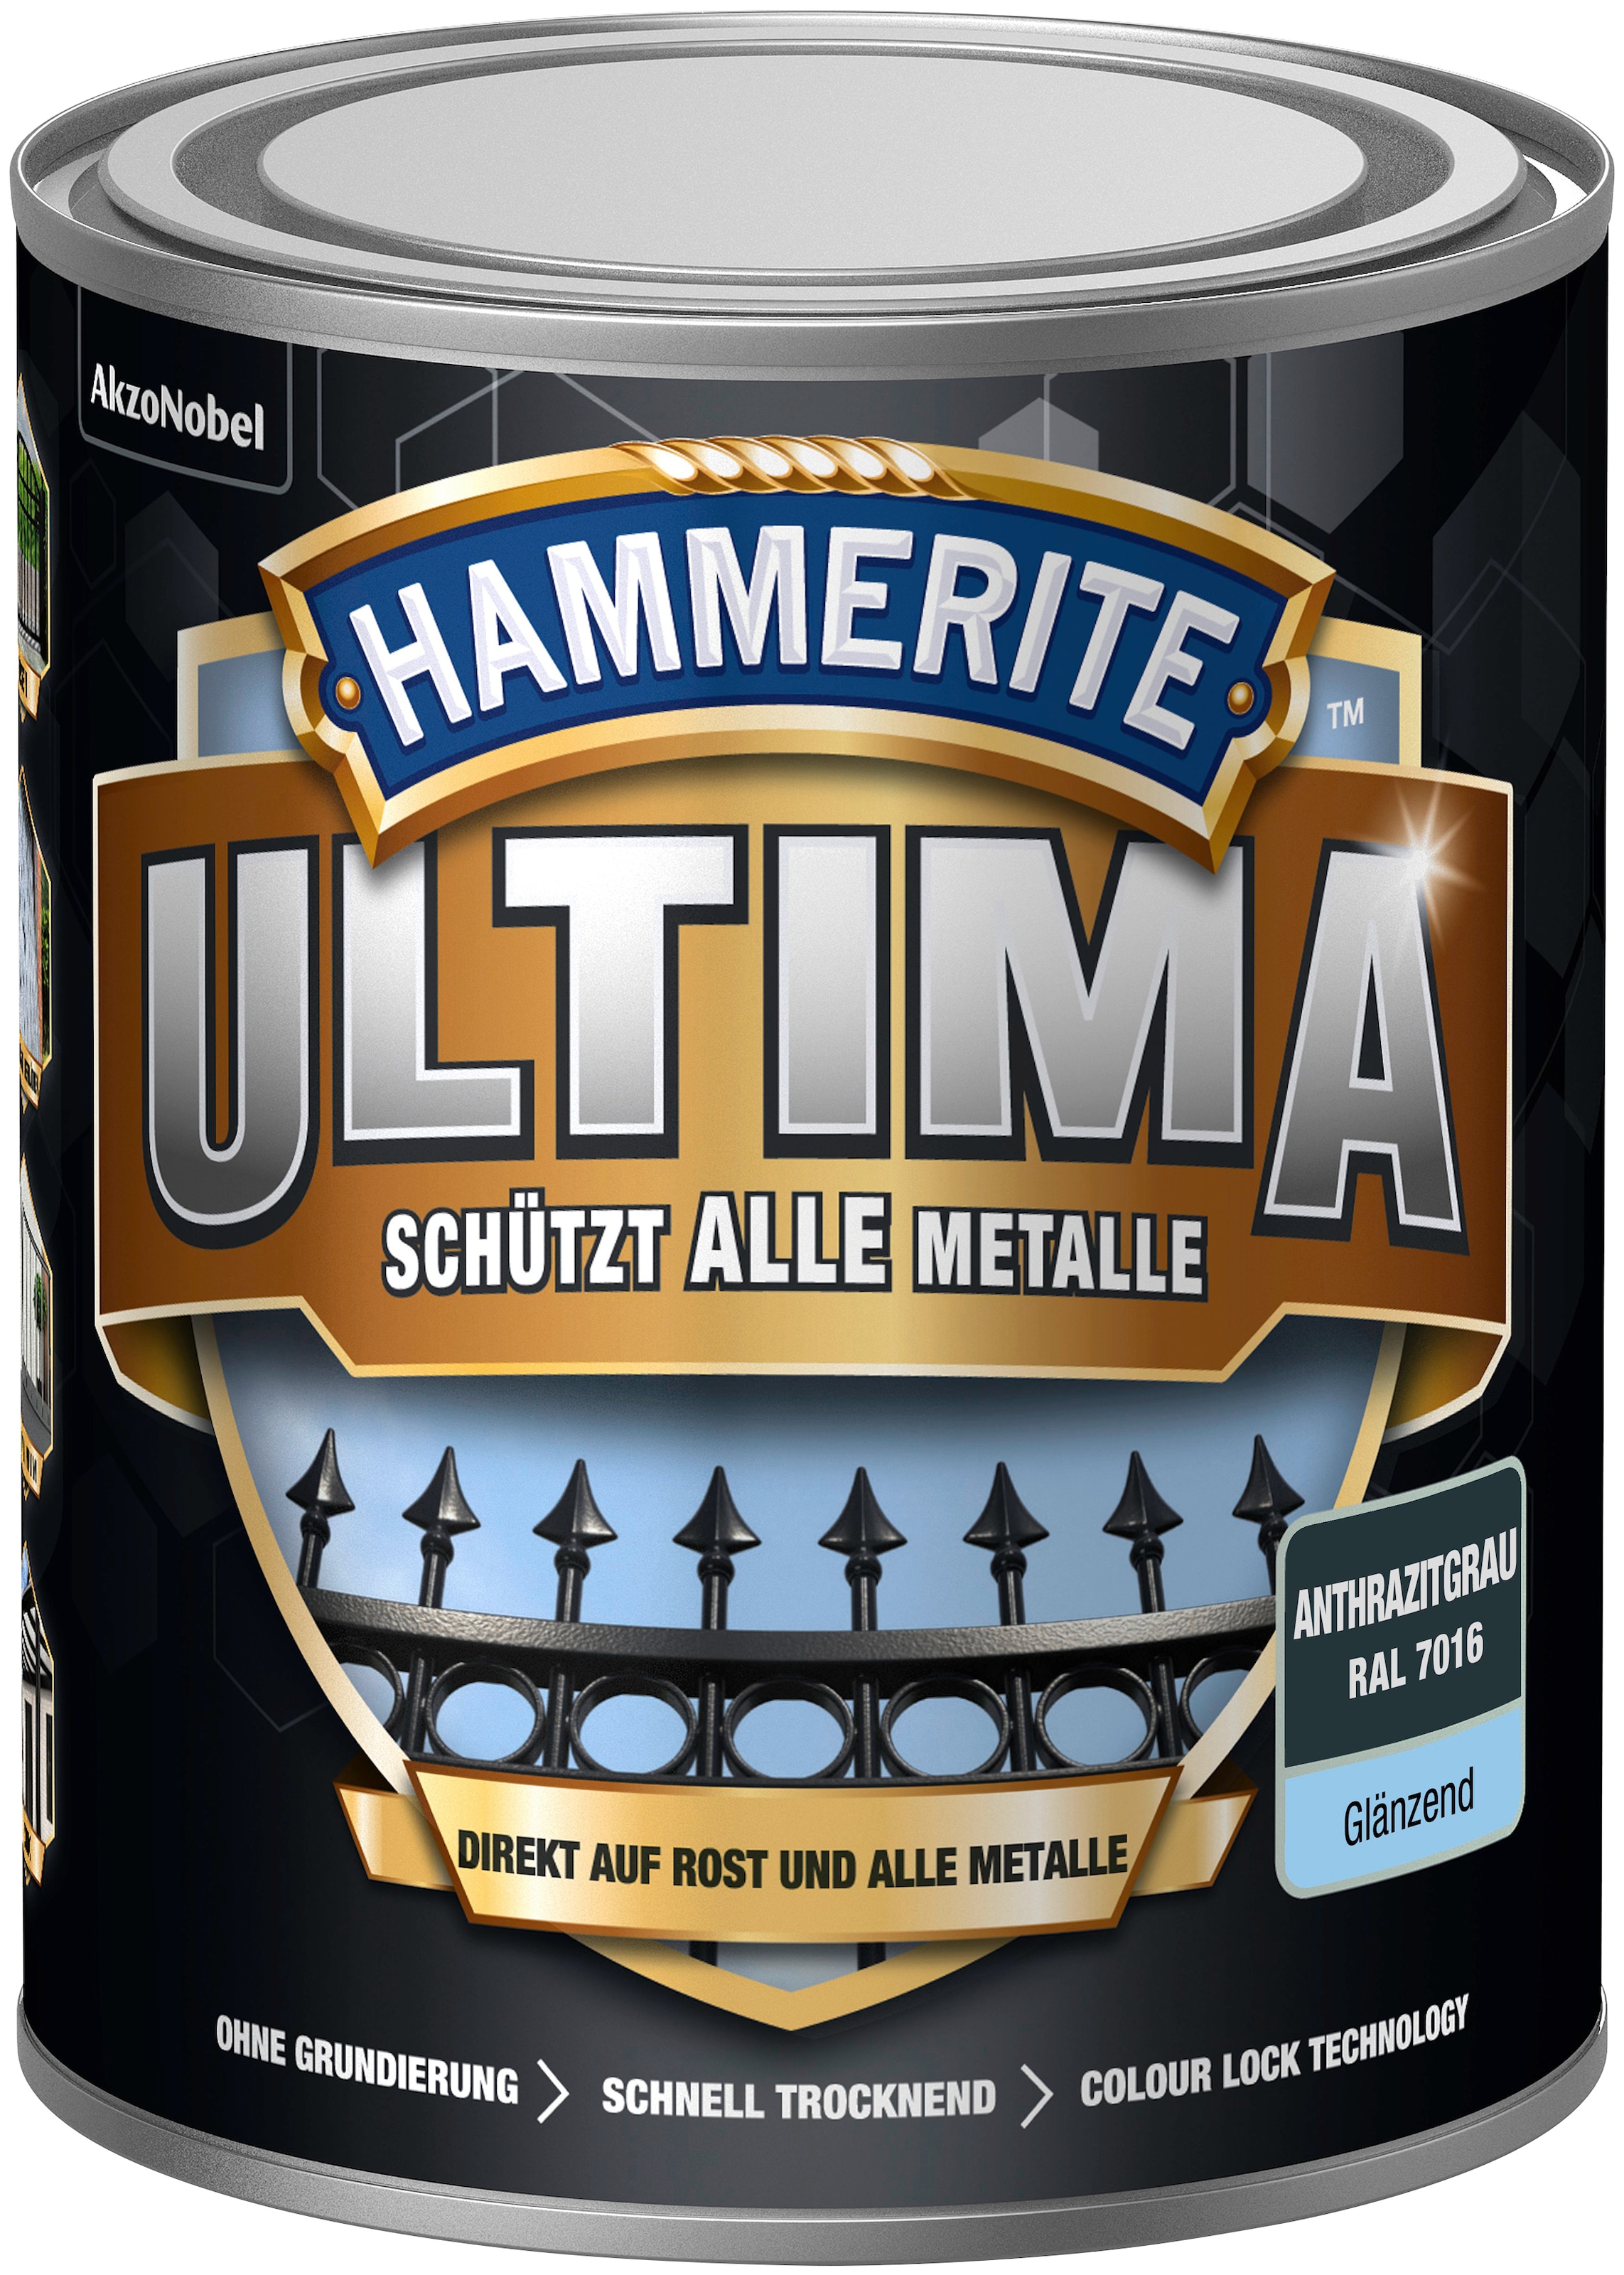 bei kaufen OTTO anthrazitgrau Metallschutzlack »ULTIMA«, glänzend RAL 7016, Hammerite 3in1,